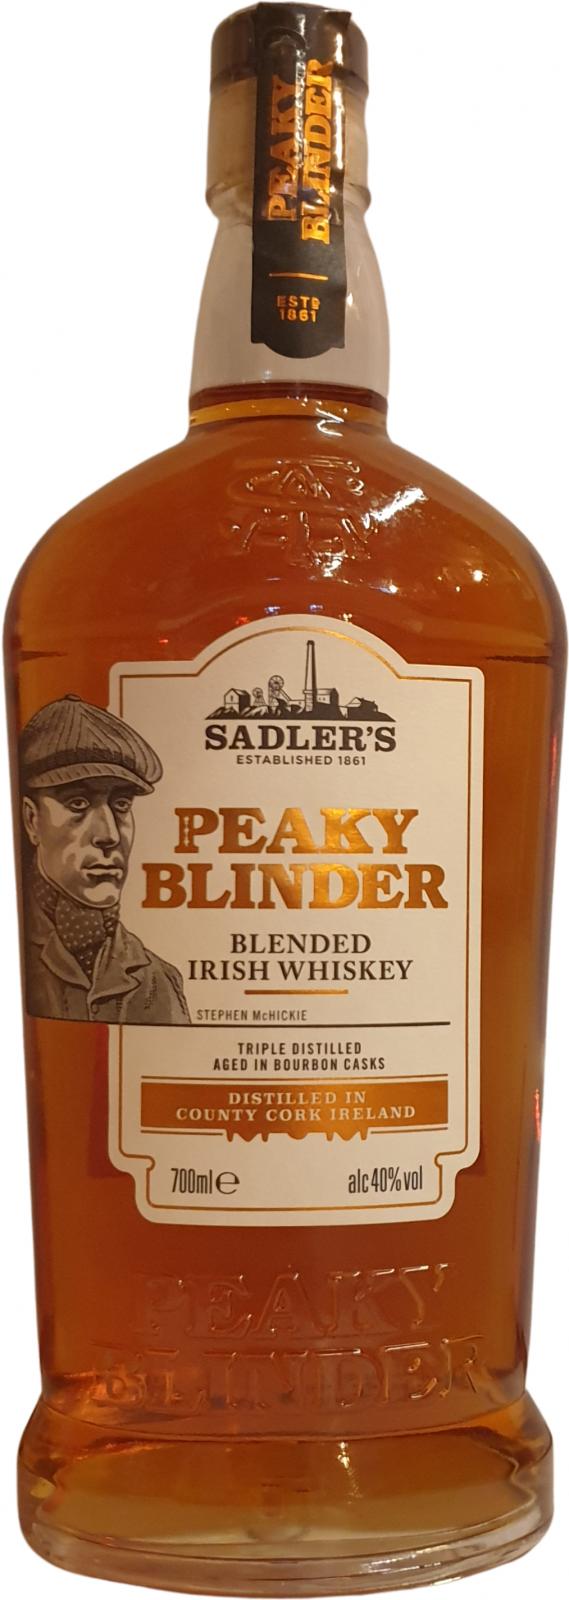 Peaky Blinder Blended Irish Whisky Sad Bourbon Cask 40% 700ml